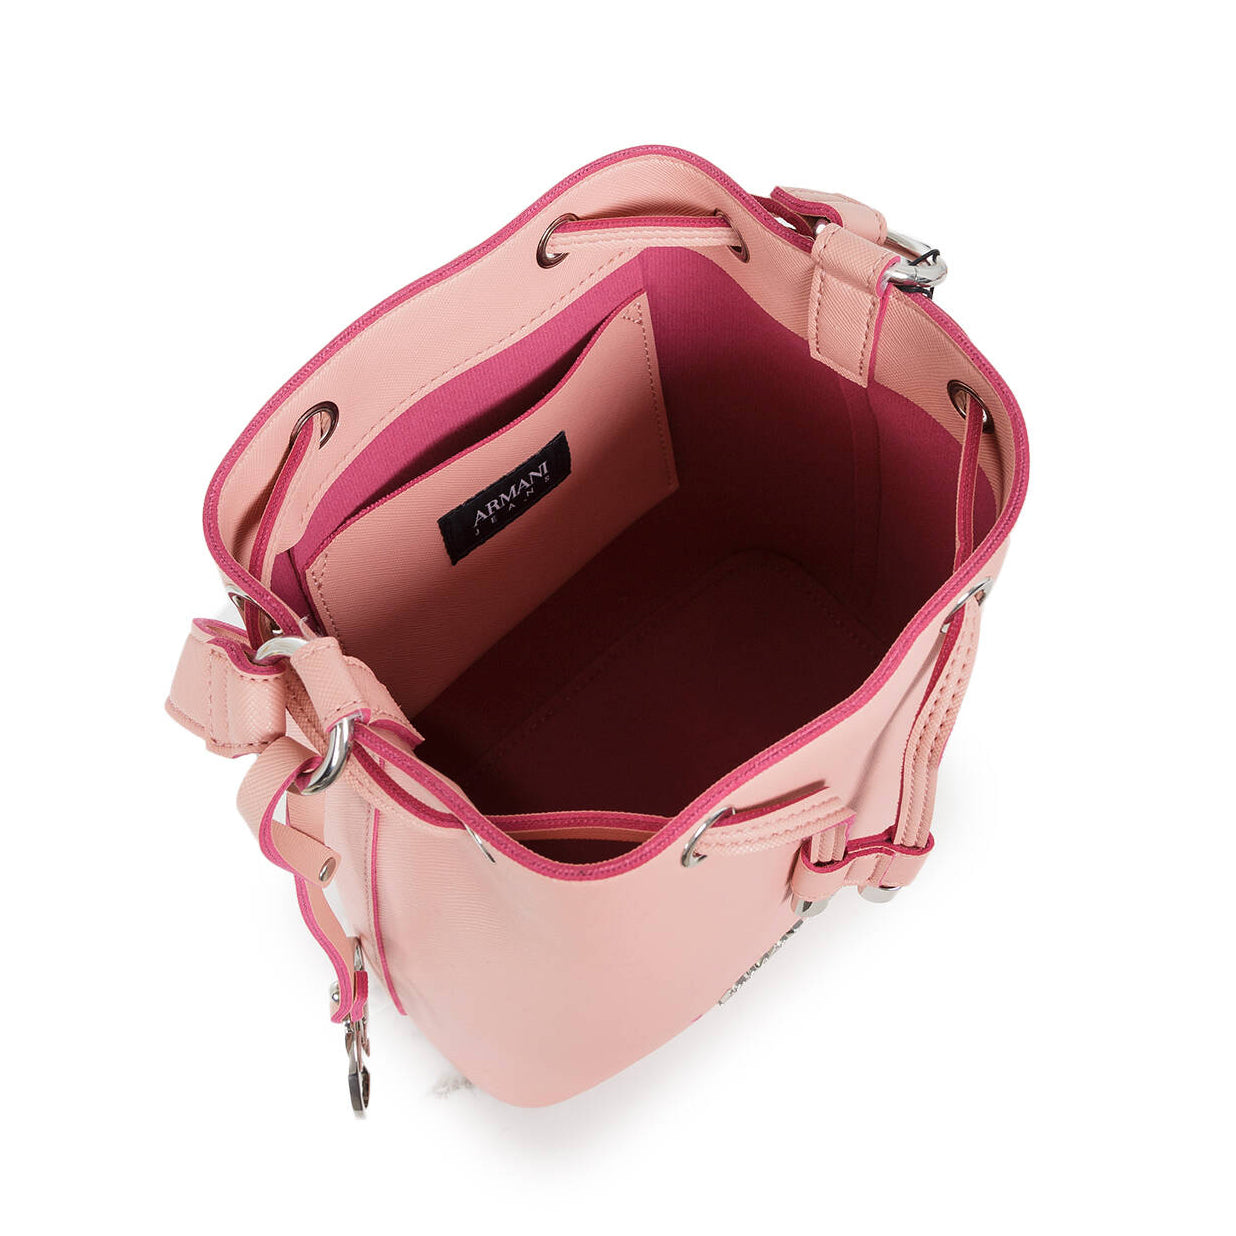 A.R.M.A.N.I J.E.A.N.S Bucket Bag in Cute Pink For Crossbody Wear